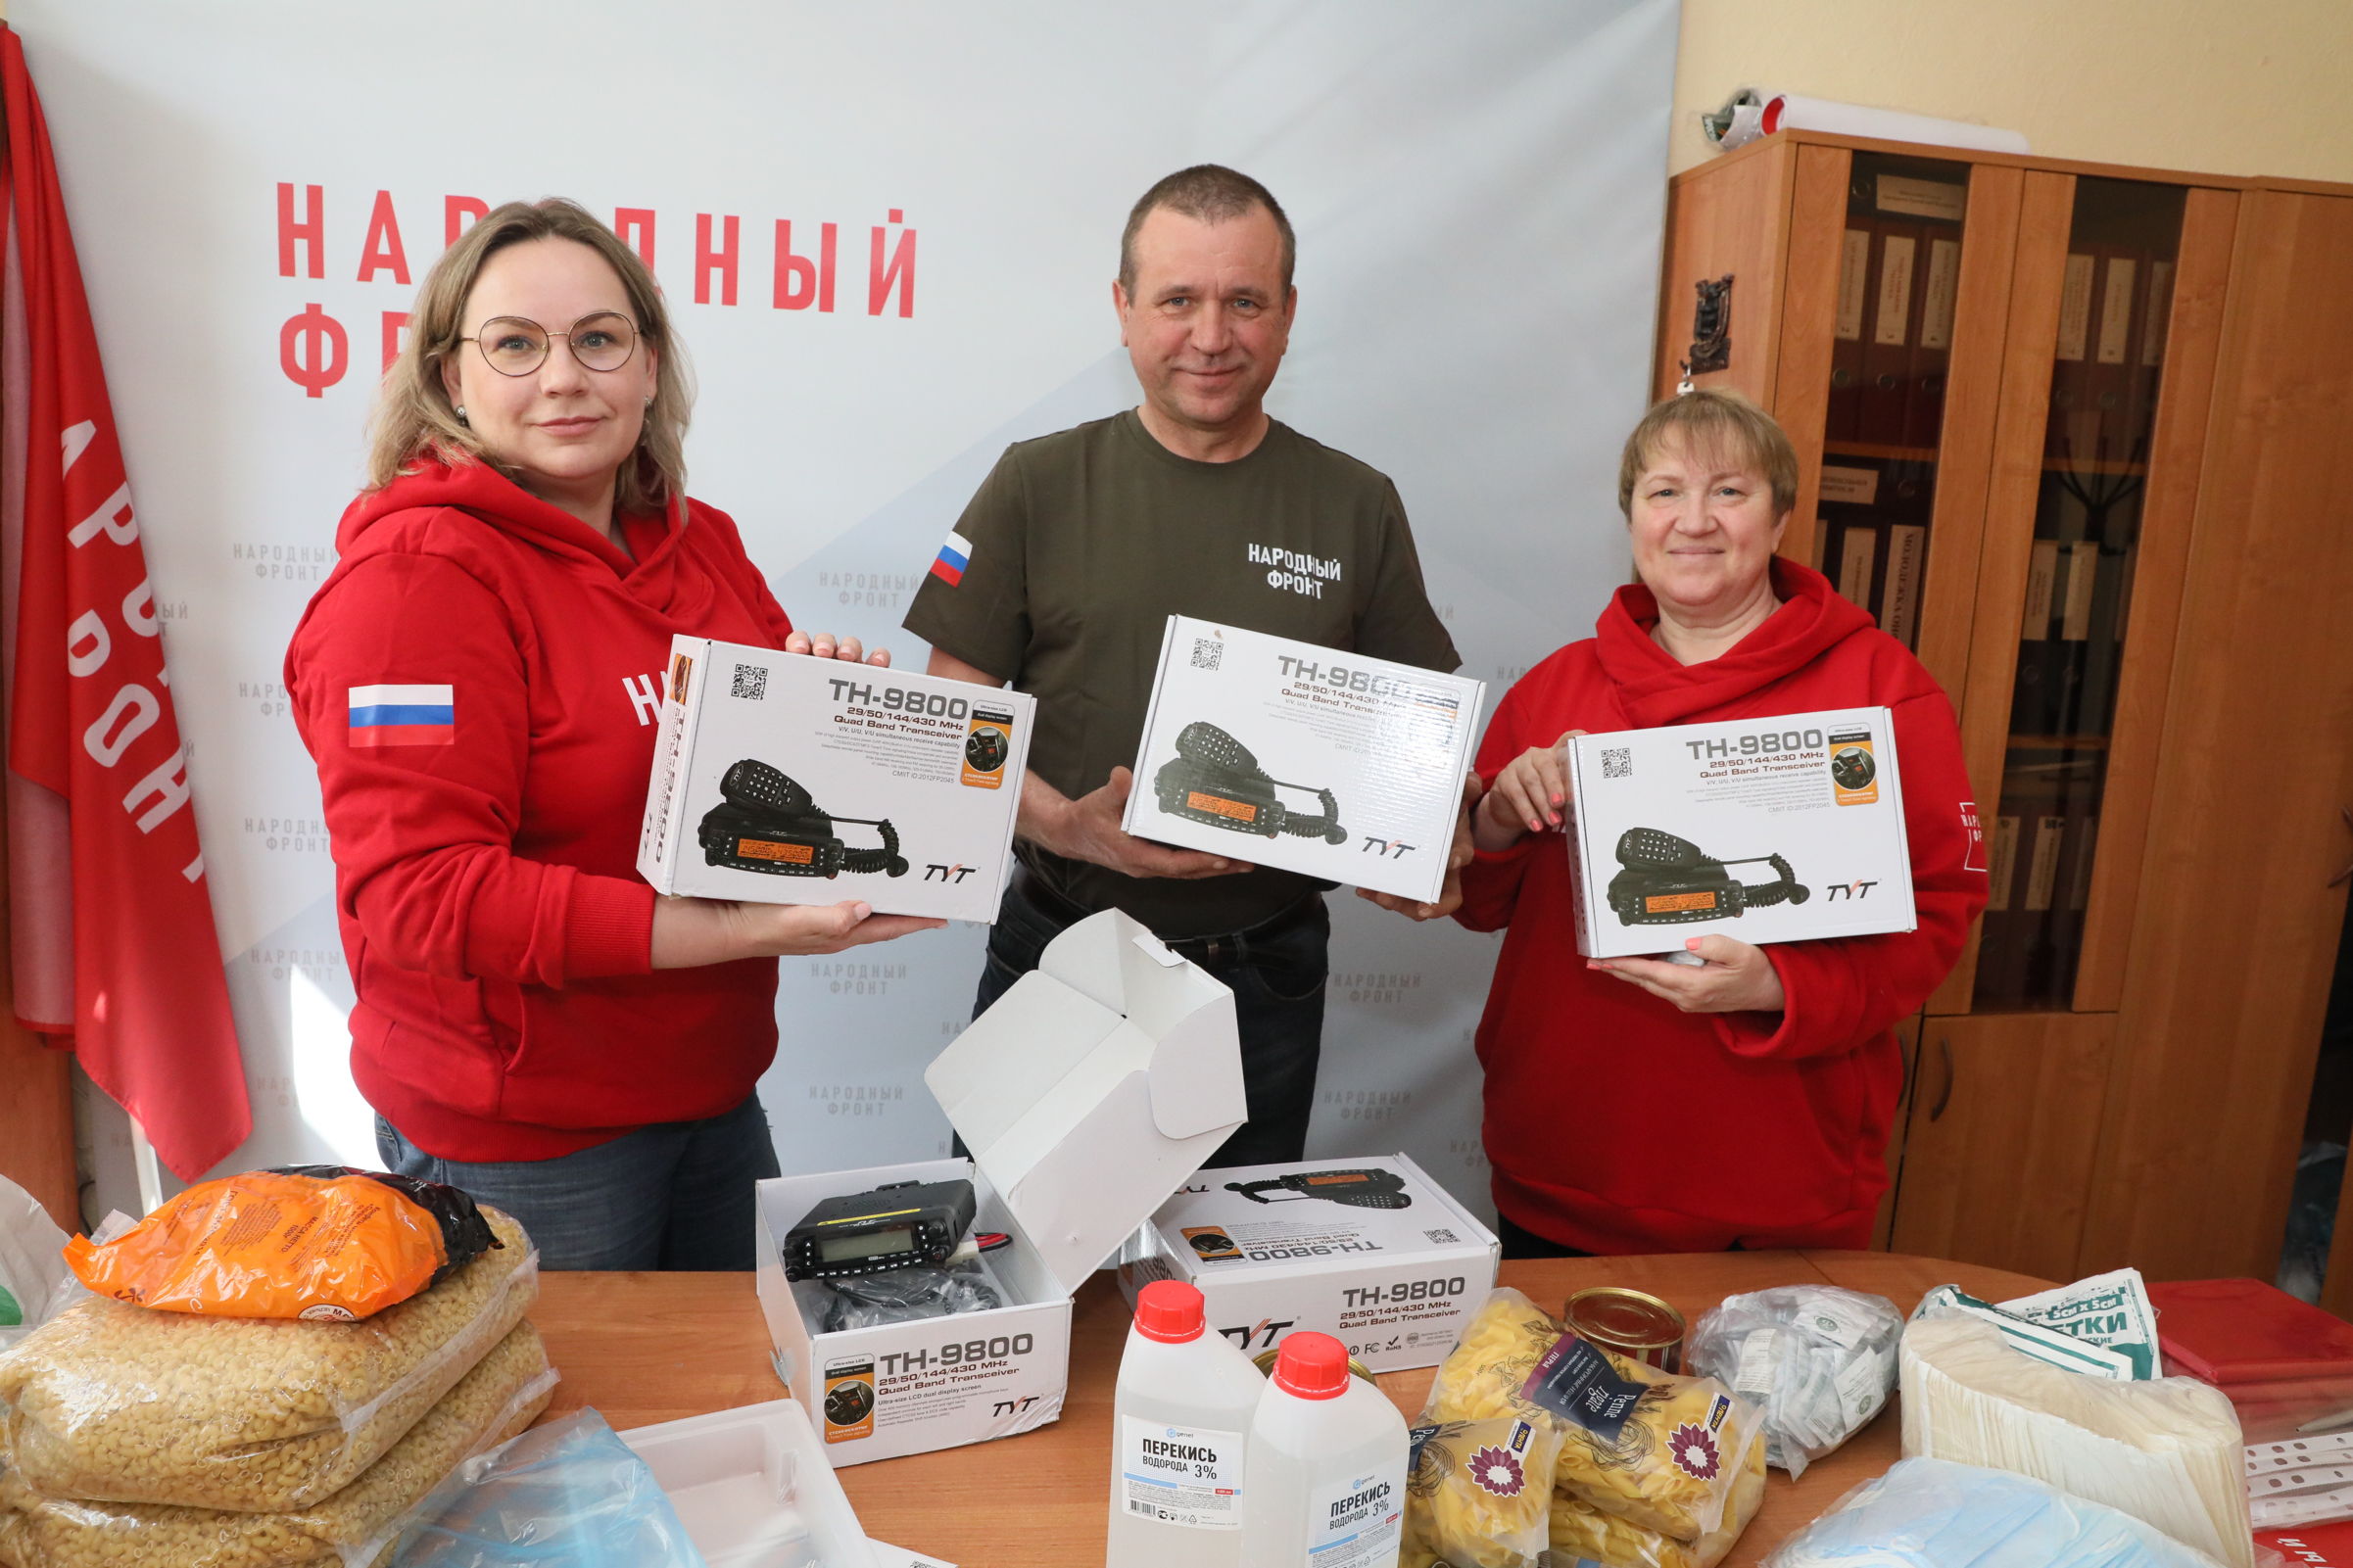 Помощь ярославцев важна и нужна: активист ОНФ рассказал о доставке гуманитарных грузов в зону СВО